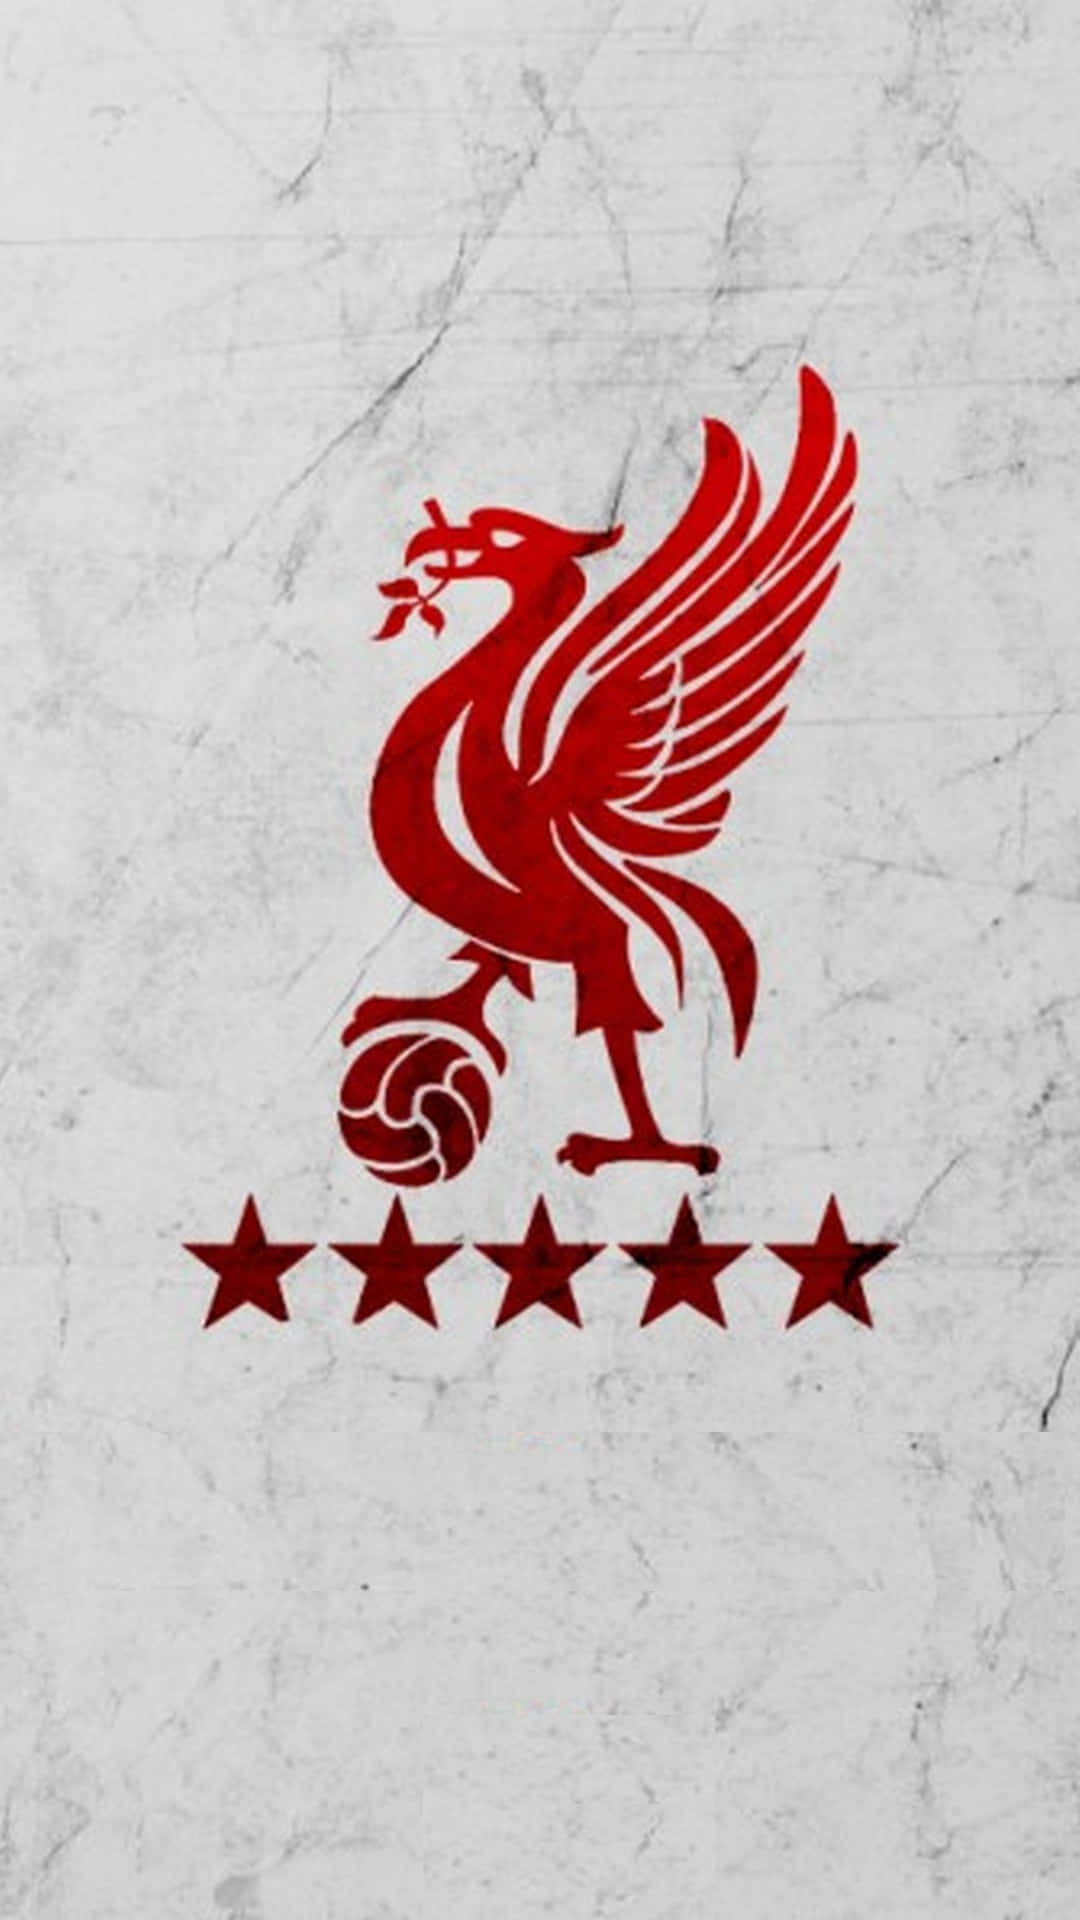 Entdeckedie Stärke Des Liverpool Fc Mit Dem Neuen Liverpool Iphone Wallpaper